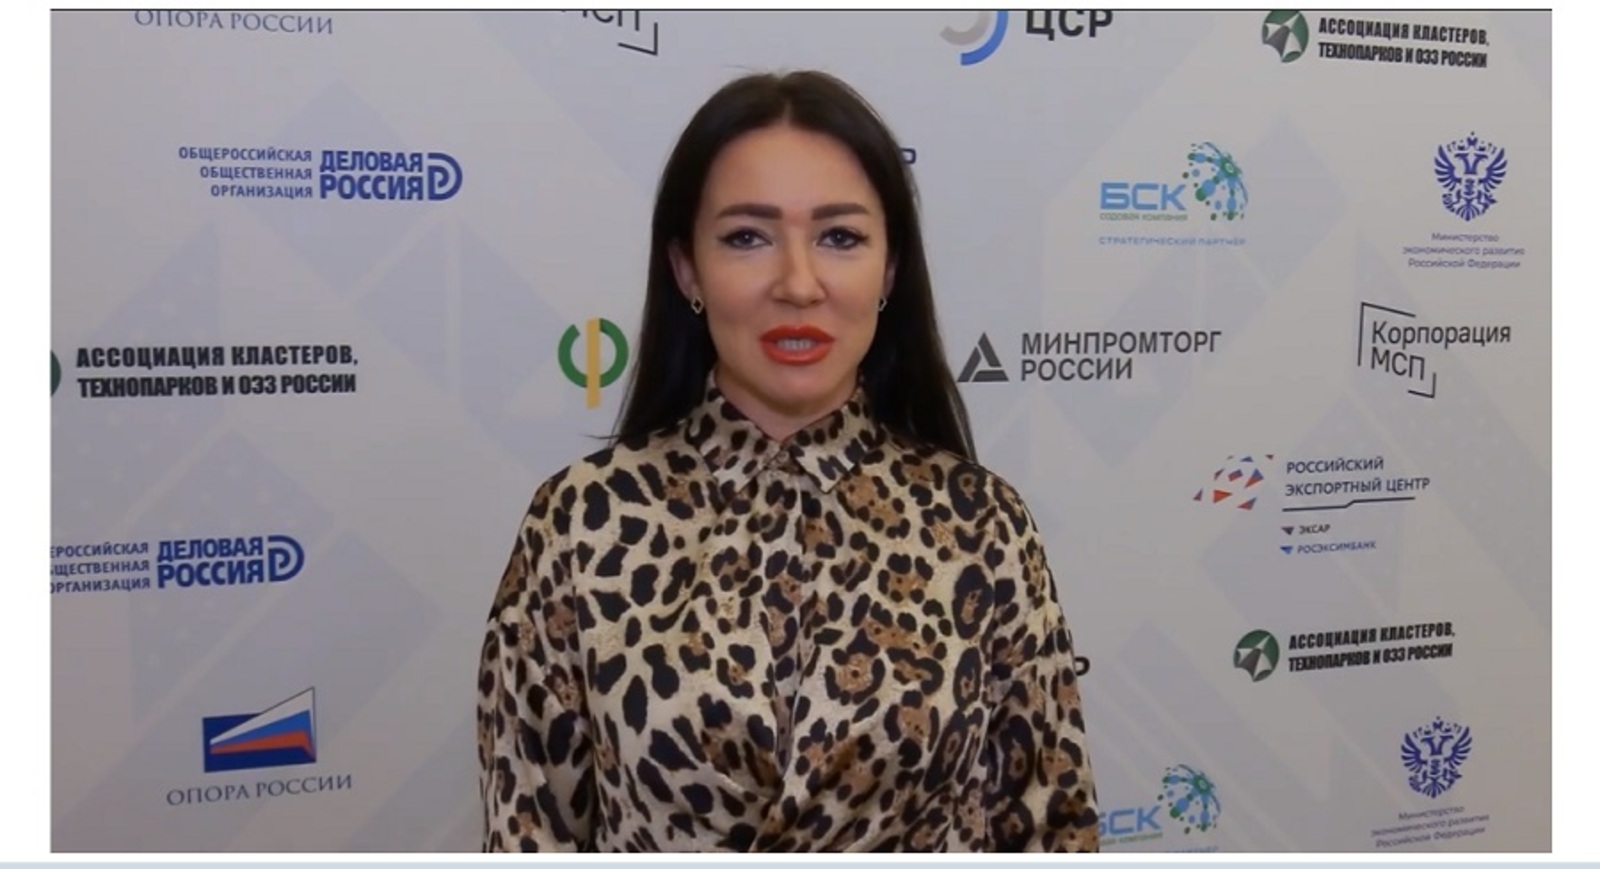 Наталья Демченко: Неделя бизнеса в Уфе — грандиозное событие